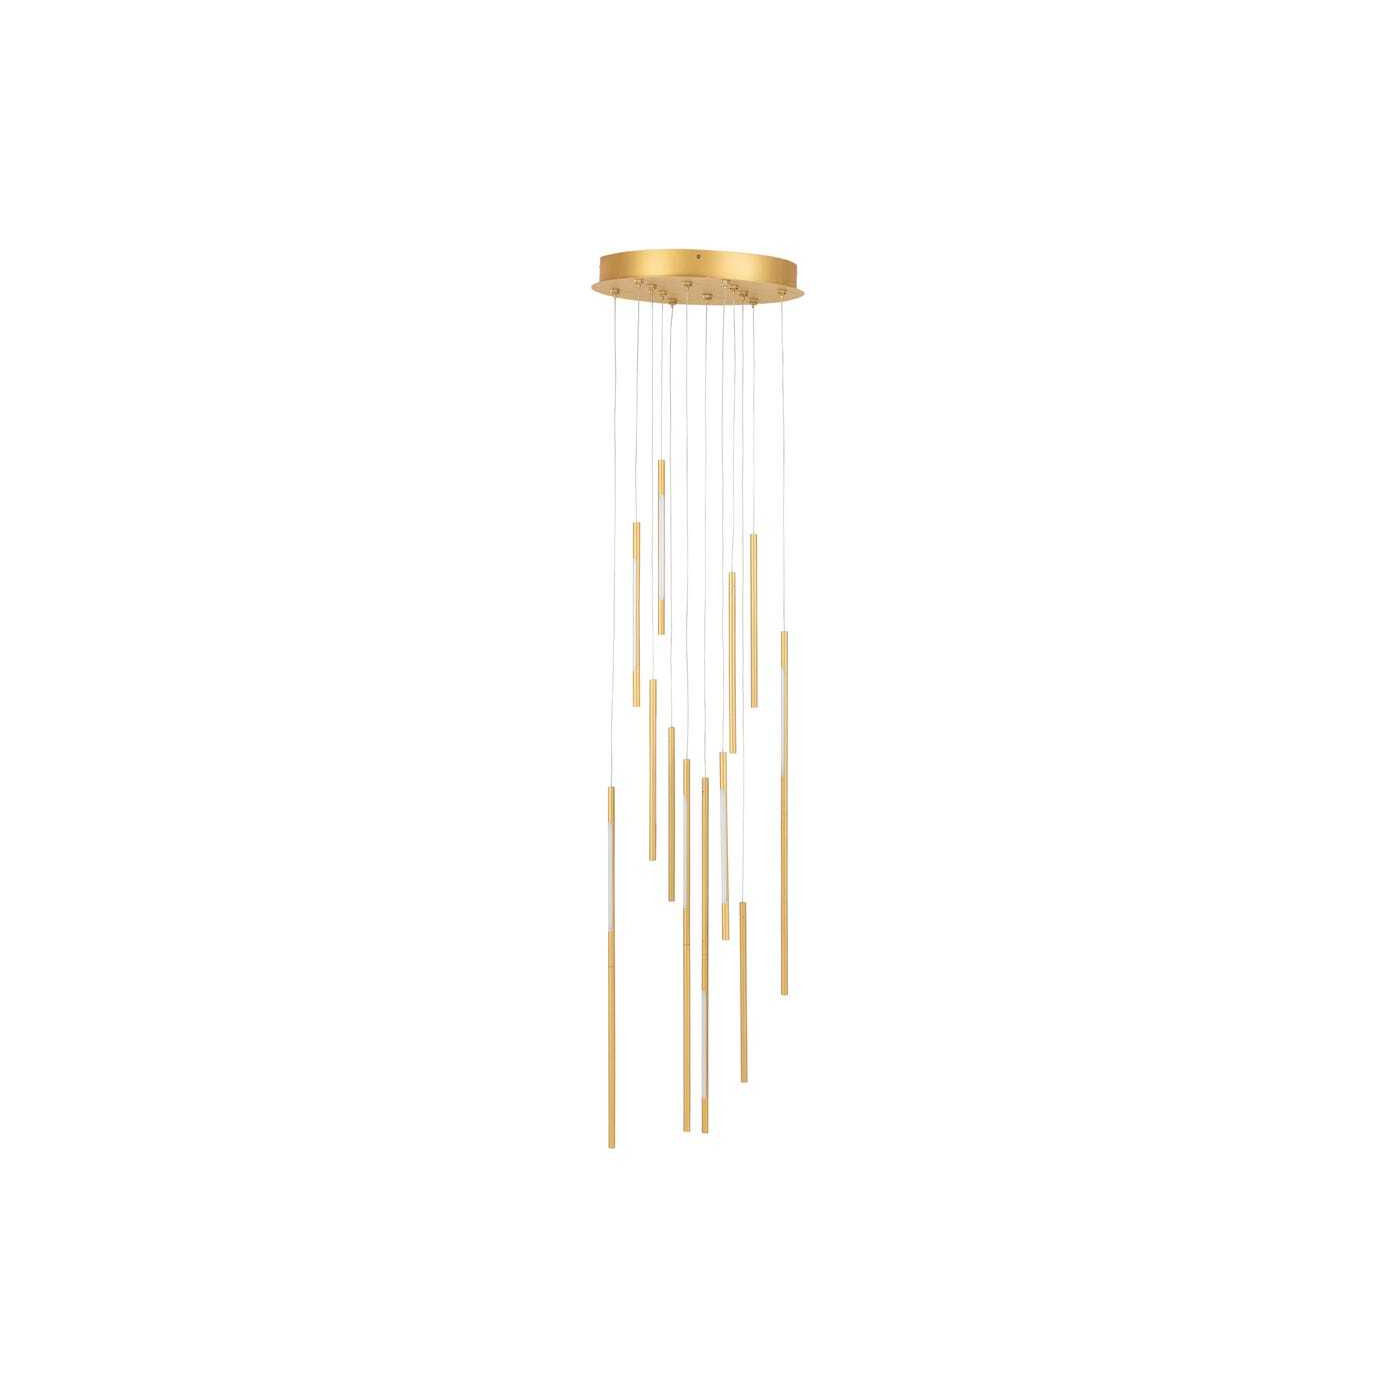 Heal's Saber LED Chandelier 12 Light Cluster Pendant Gold - image 1